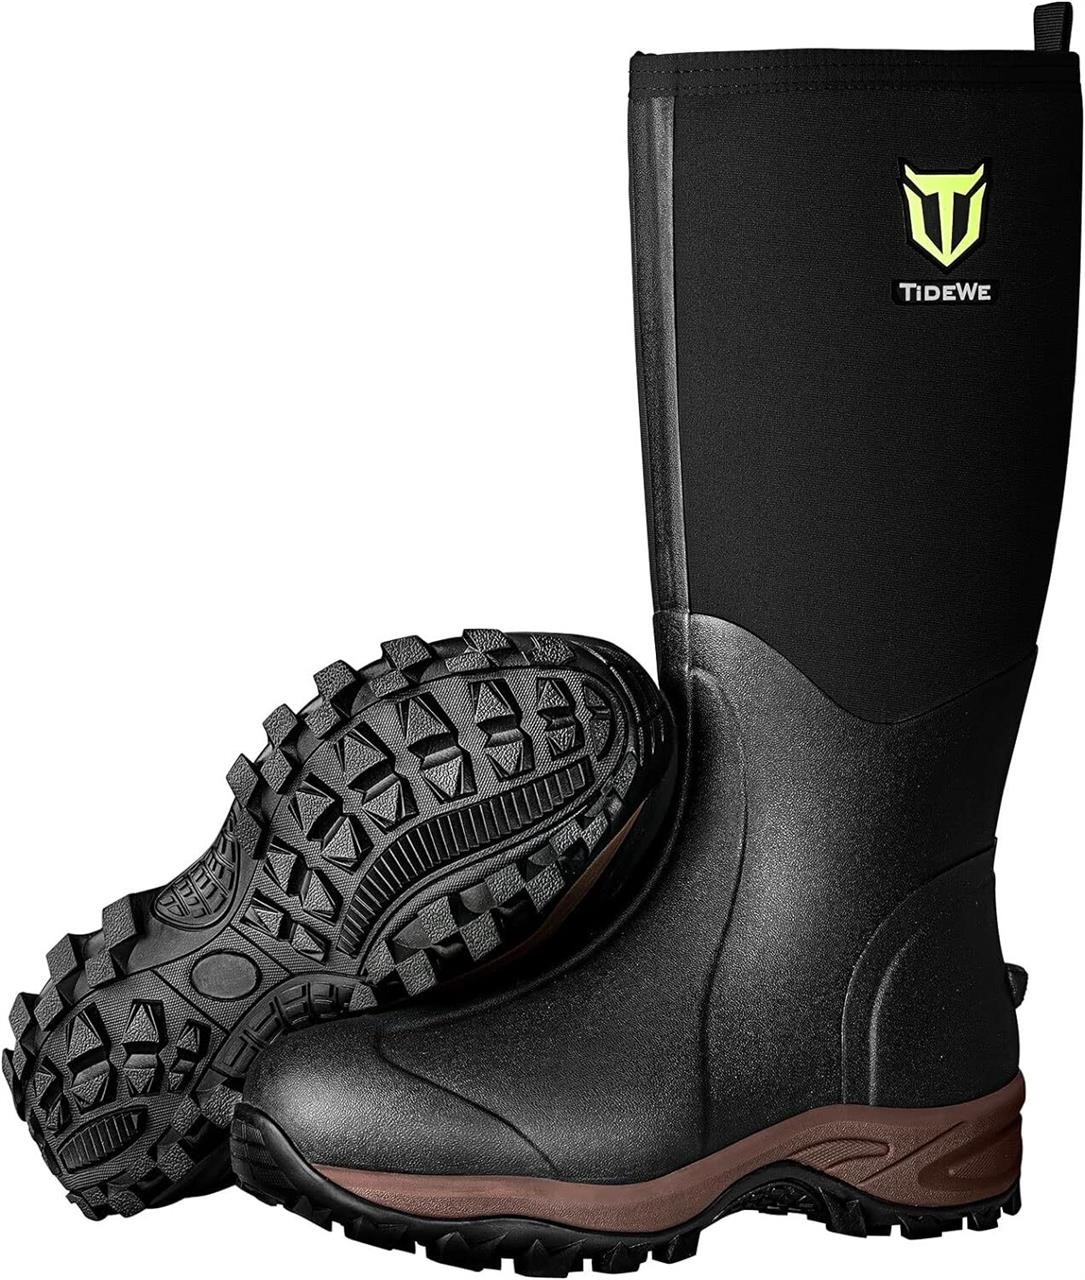 TIDEWE Rubber Neoprene Boots  Waterproof Size 6